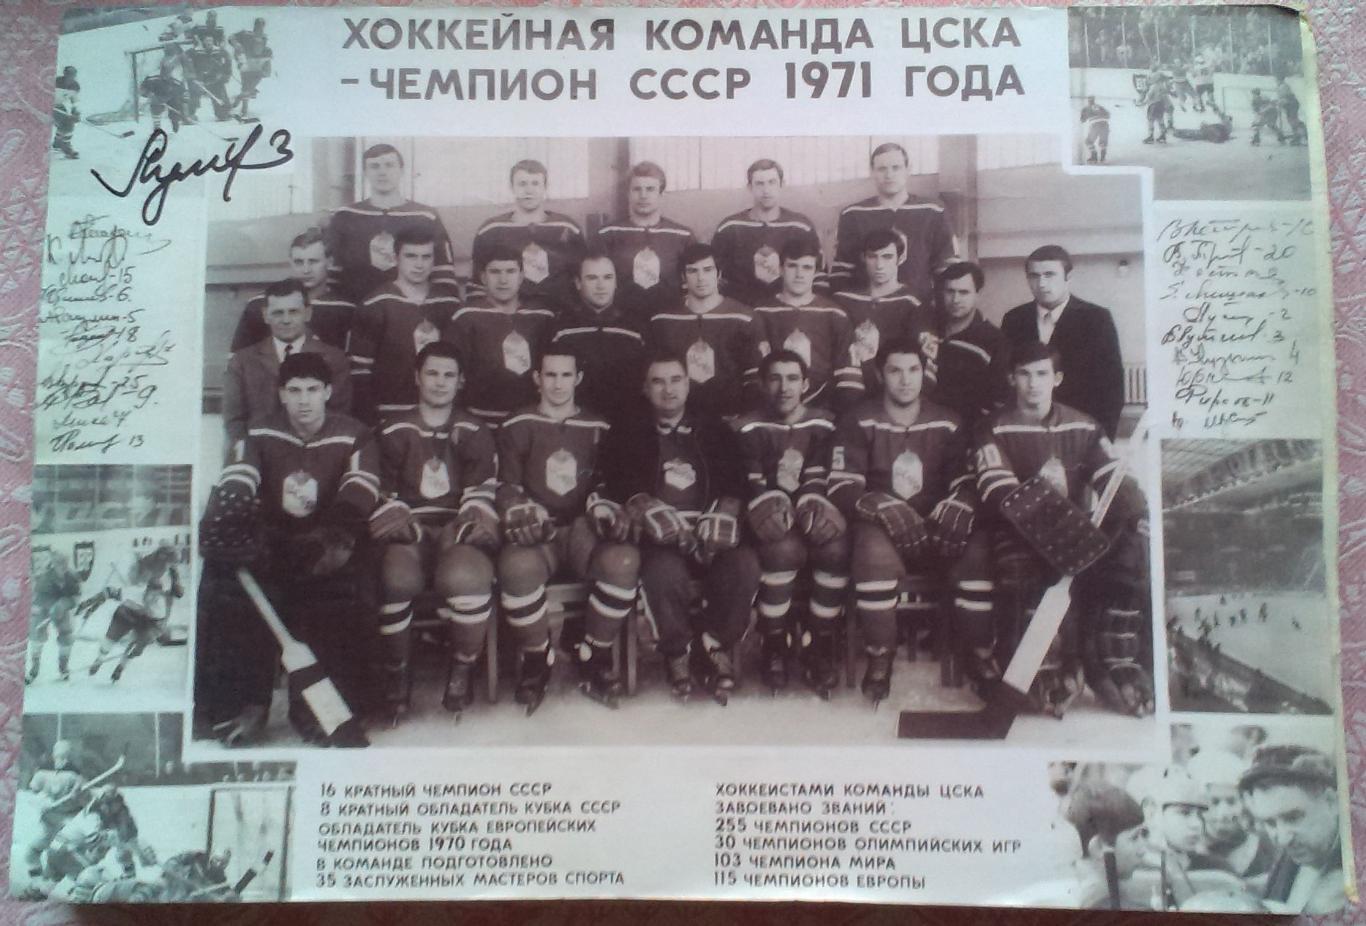 Хоккейная команда ЦСКА - Чемпион СССР 1971 года. Фотография. Автограф В.Лутченко